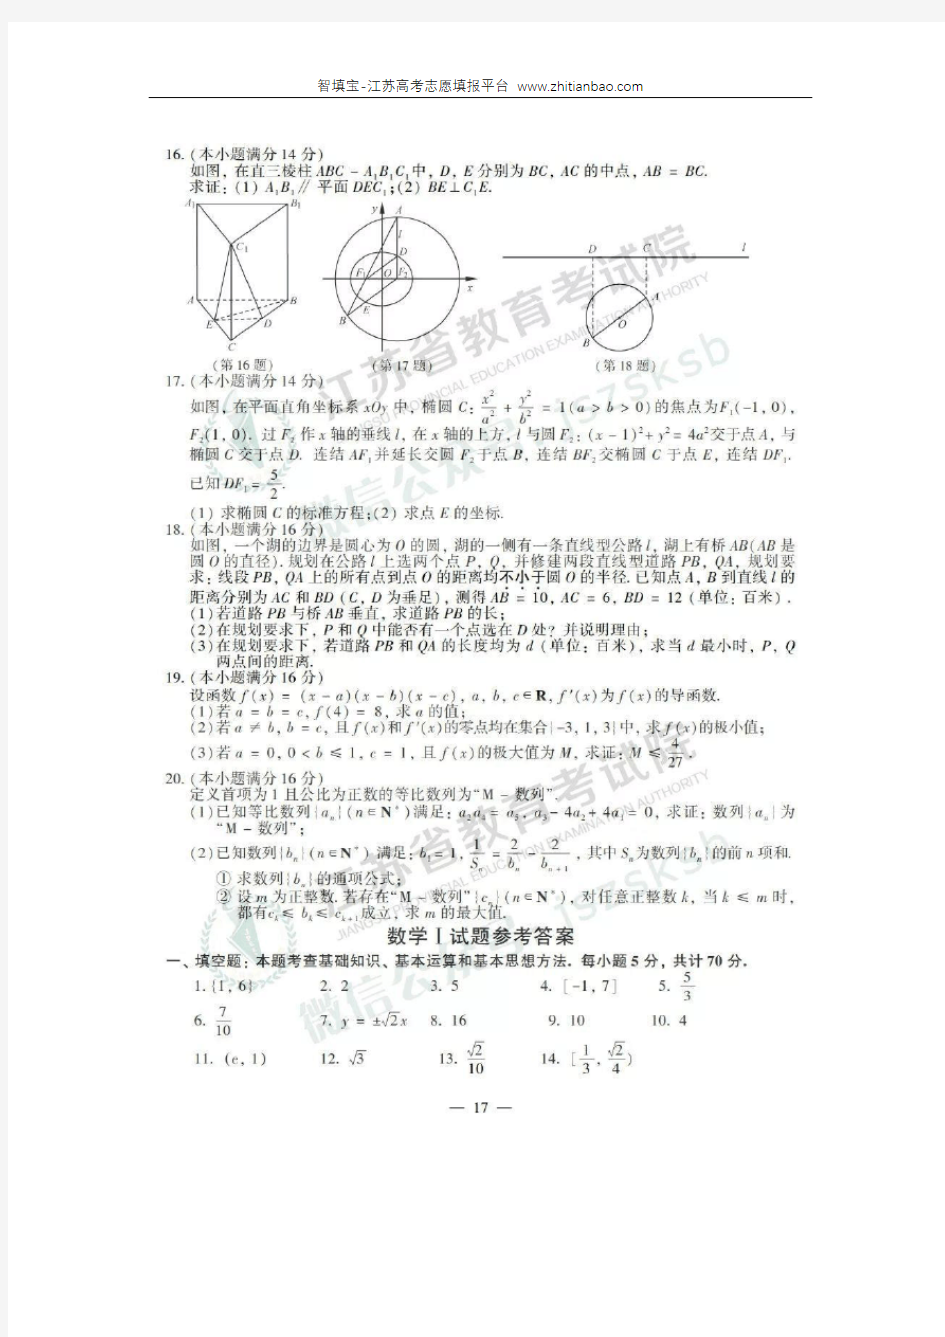 2019年江苏数学高考试卷含答案和解析(江苏省考试院版本)